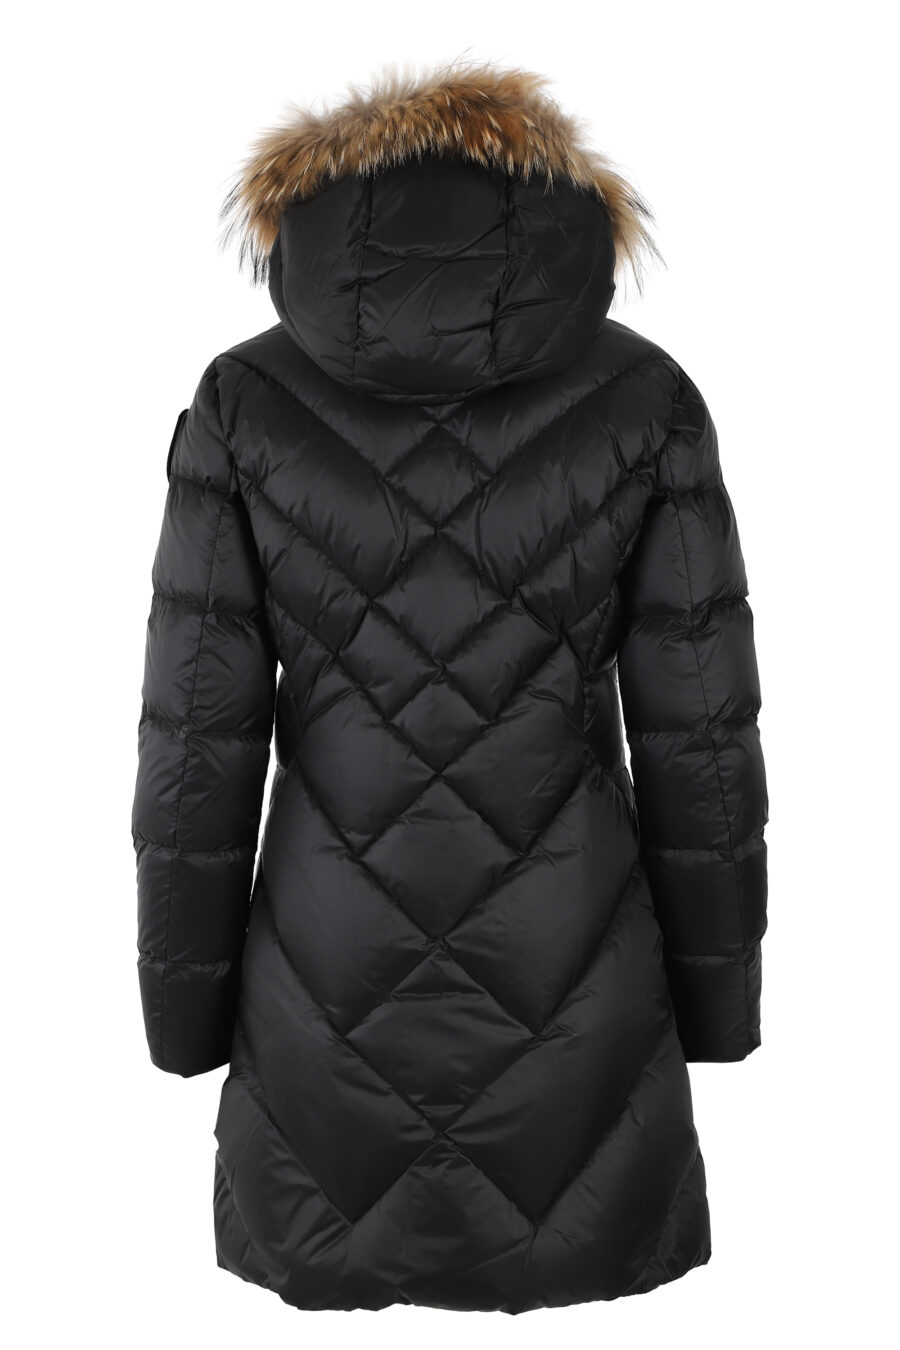 Lange schwarze Jacke mit Fellkapuze und braunem Futter - IMG 4991